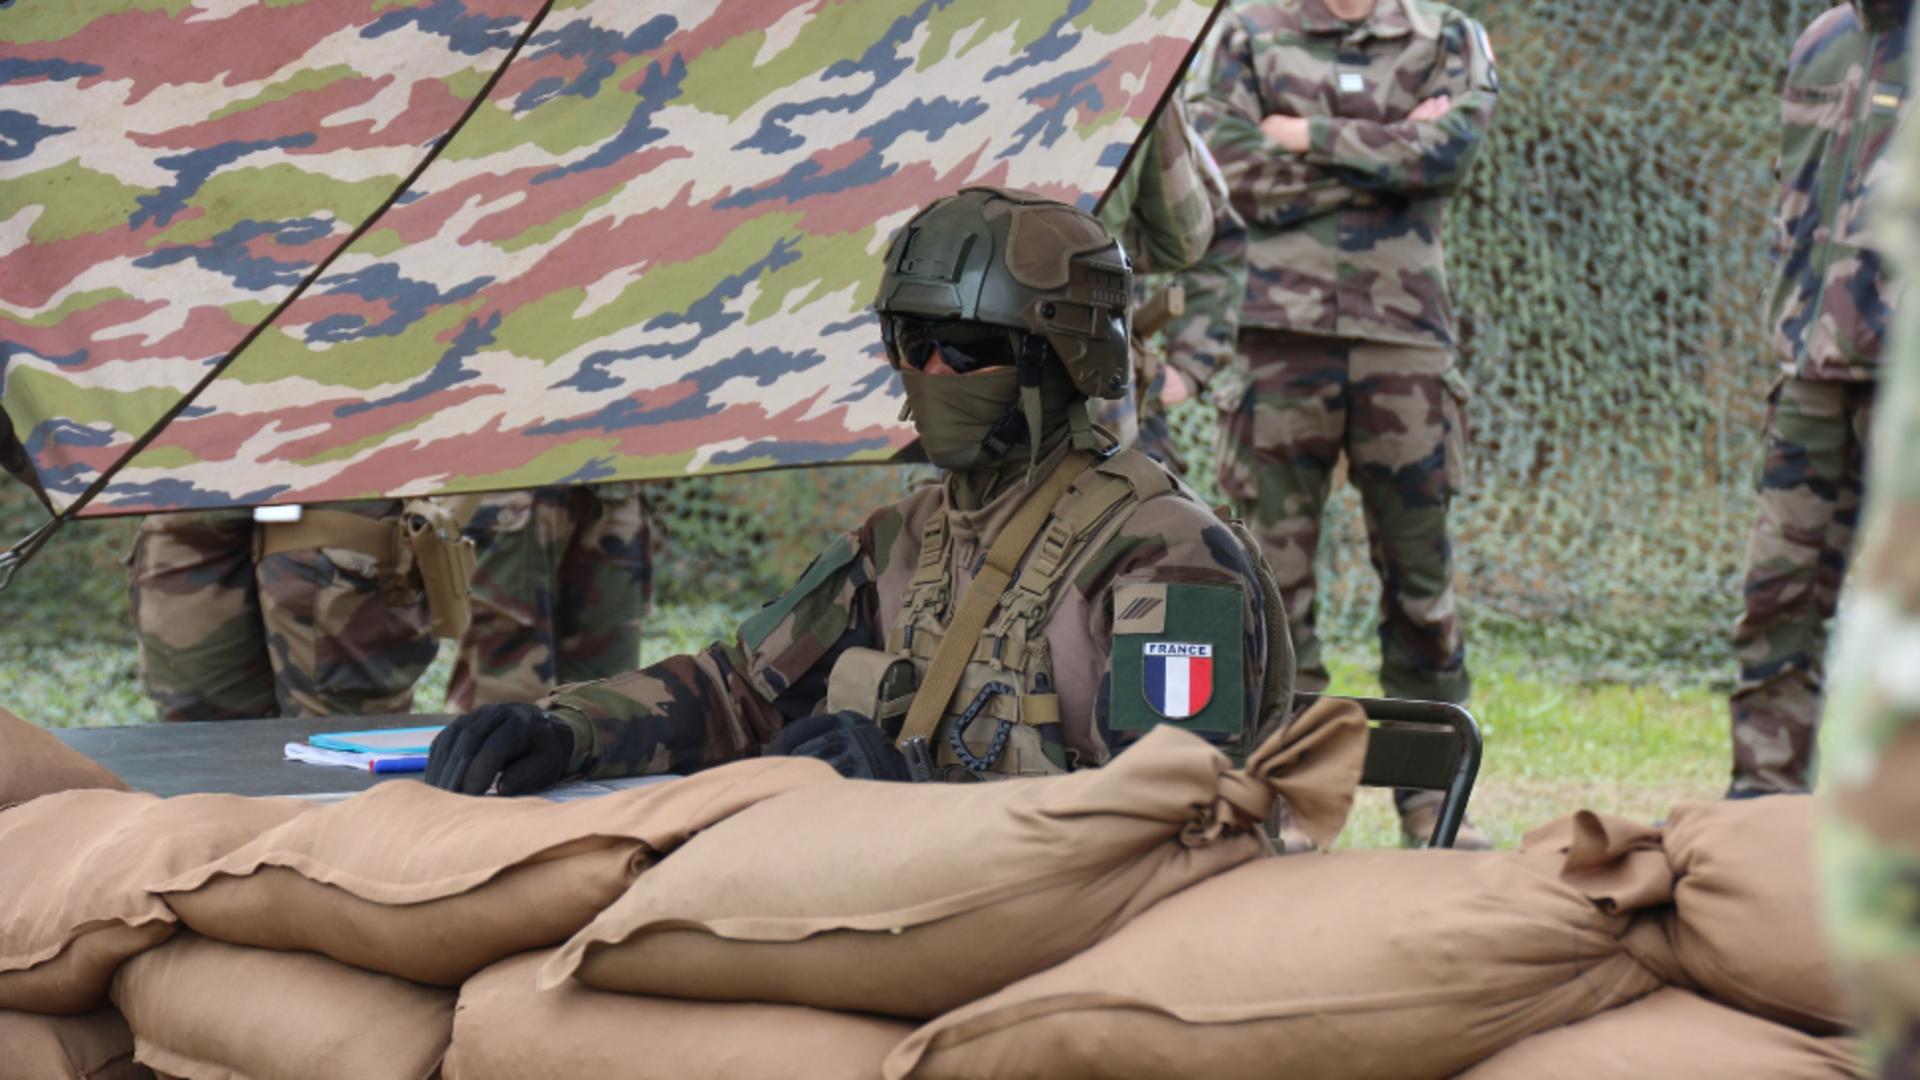 A început pregătirea celui mai mare exercițiu NATO România - Participă peste 10 mii de soldați din 13 țări aliate